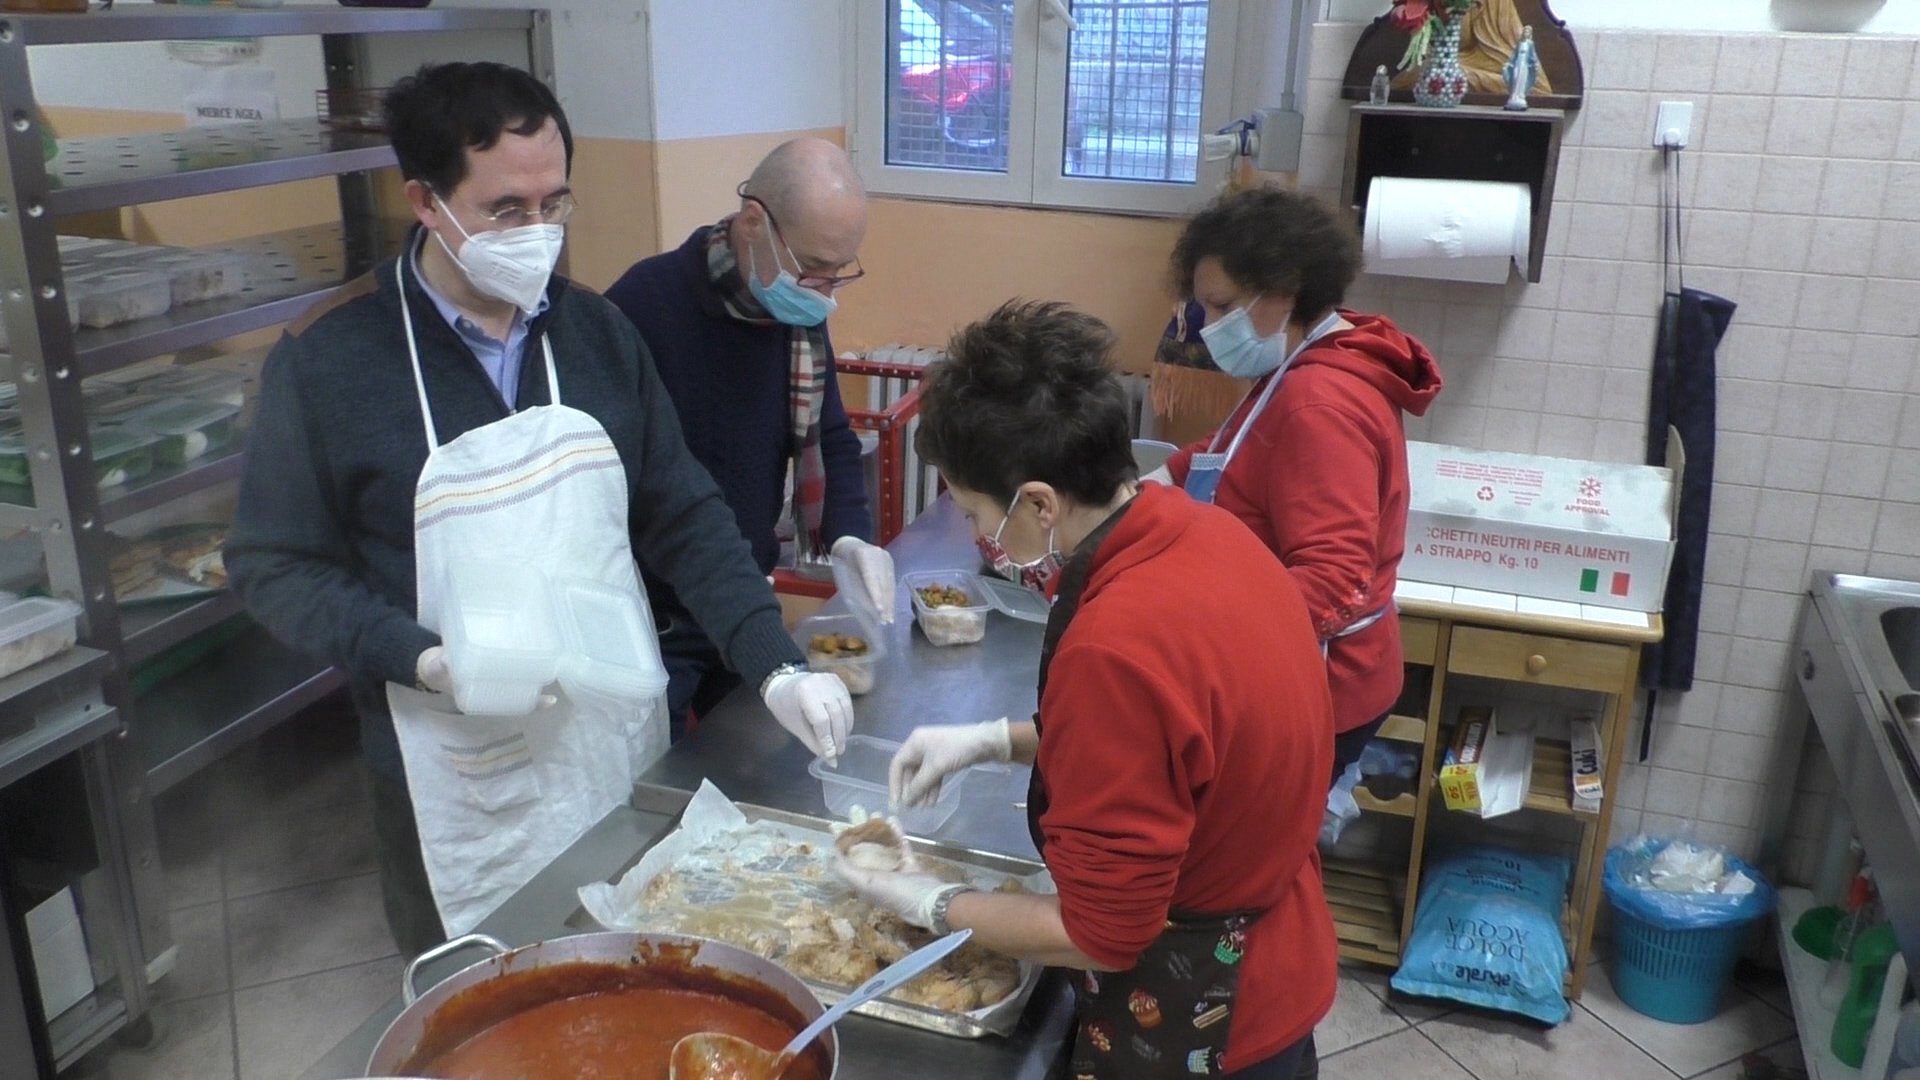 Crisi sempre più dura: la Caritas lancia appello per trovare nuovi volontari